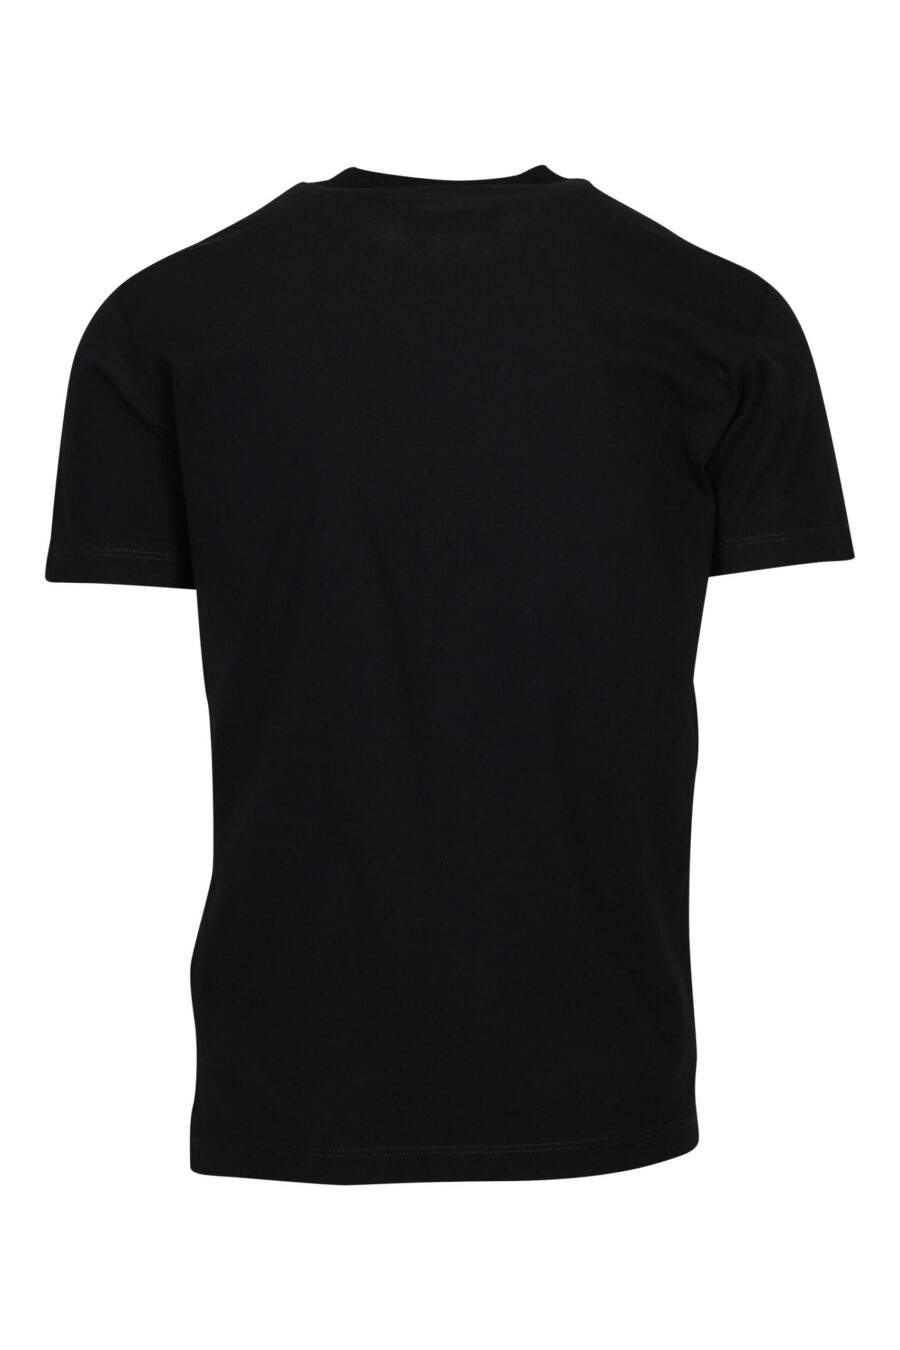 Schwarzes T-Shirt mit gefaltetem "milano"-Logo - 8054148571047 1 skaliert